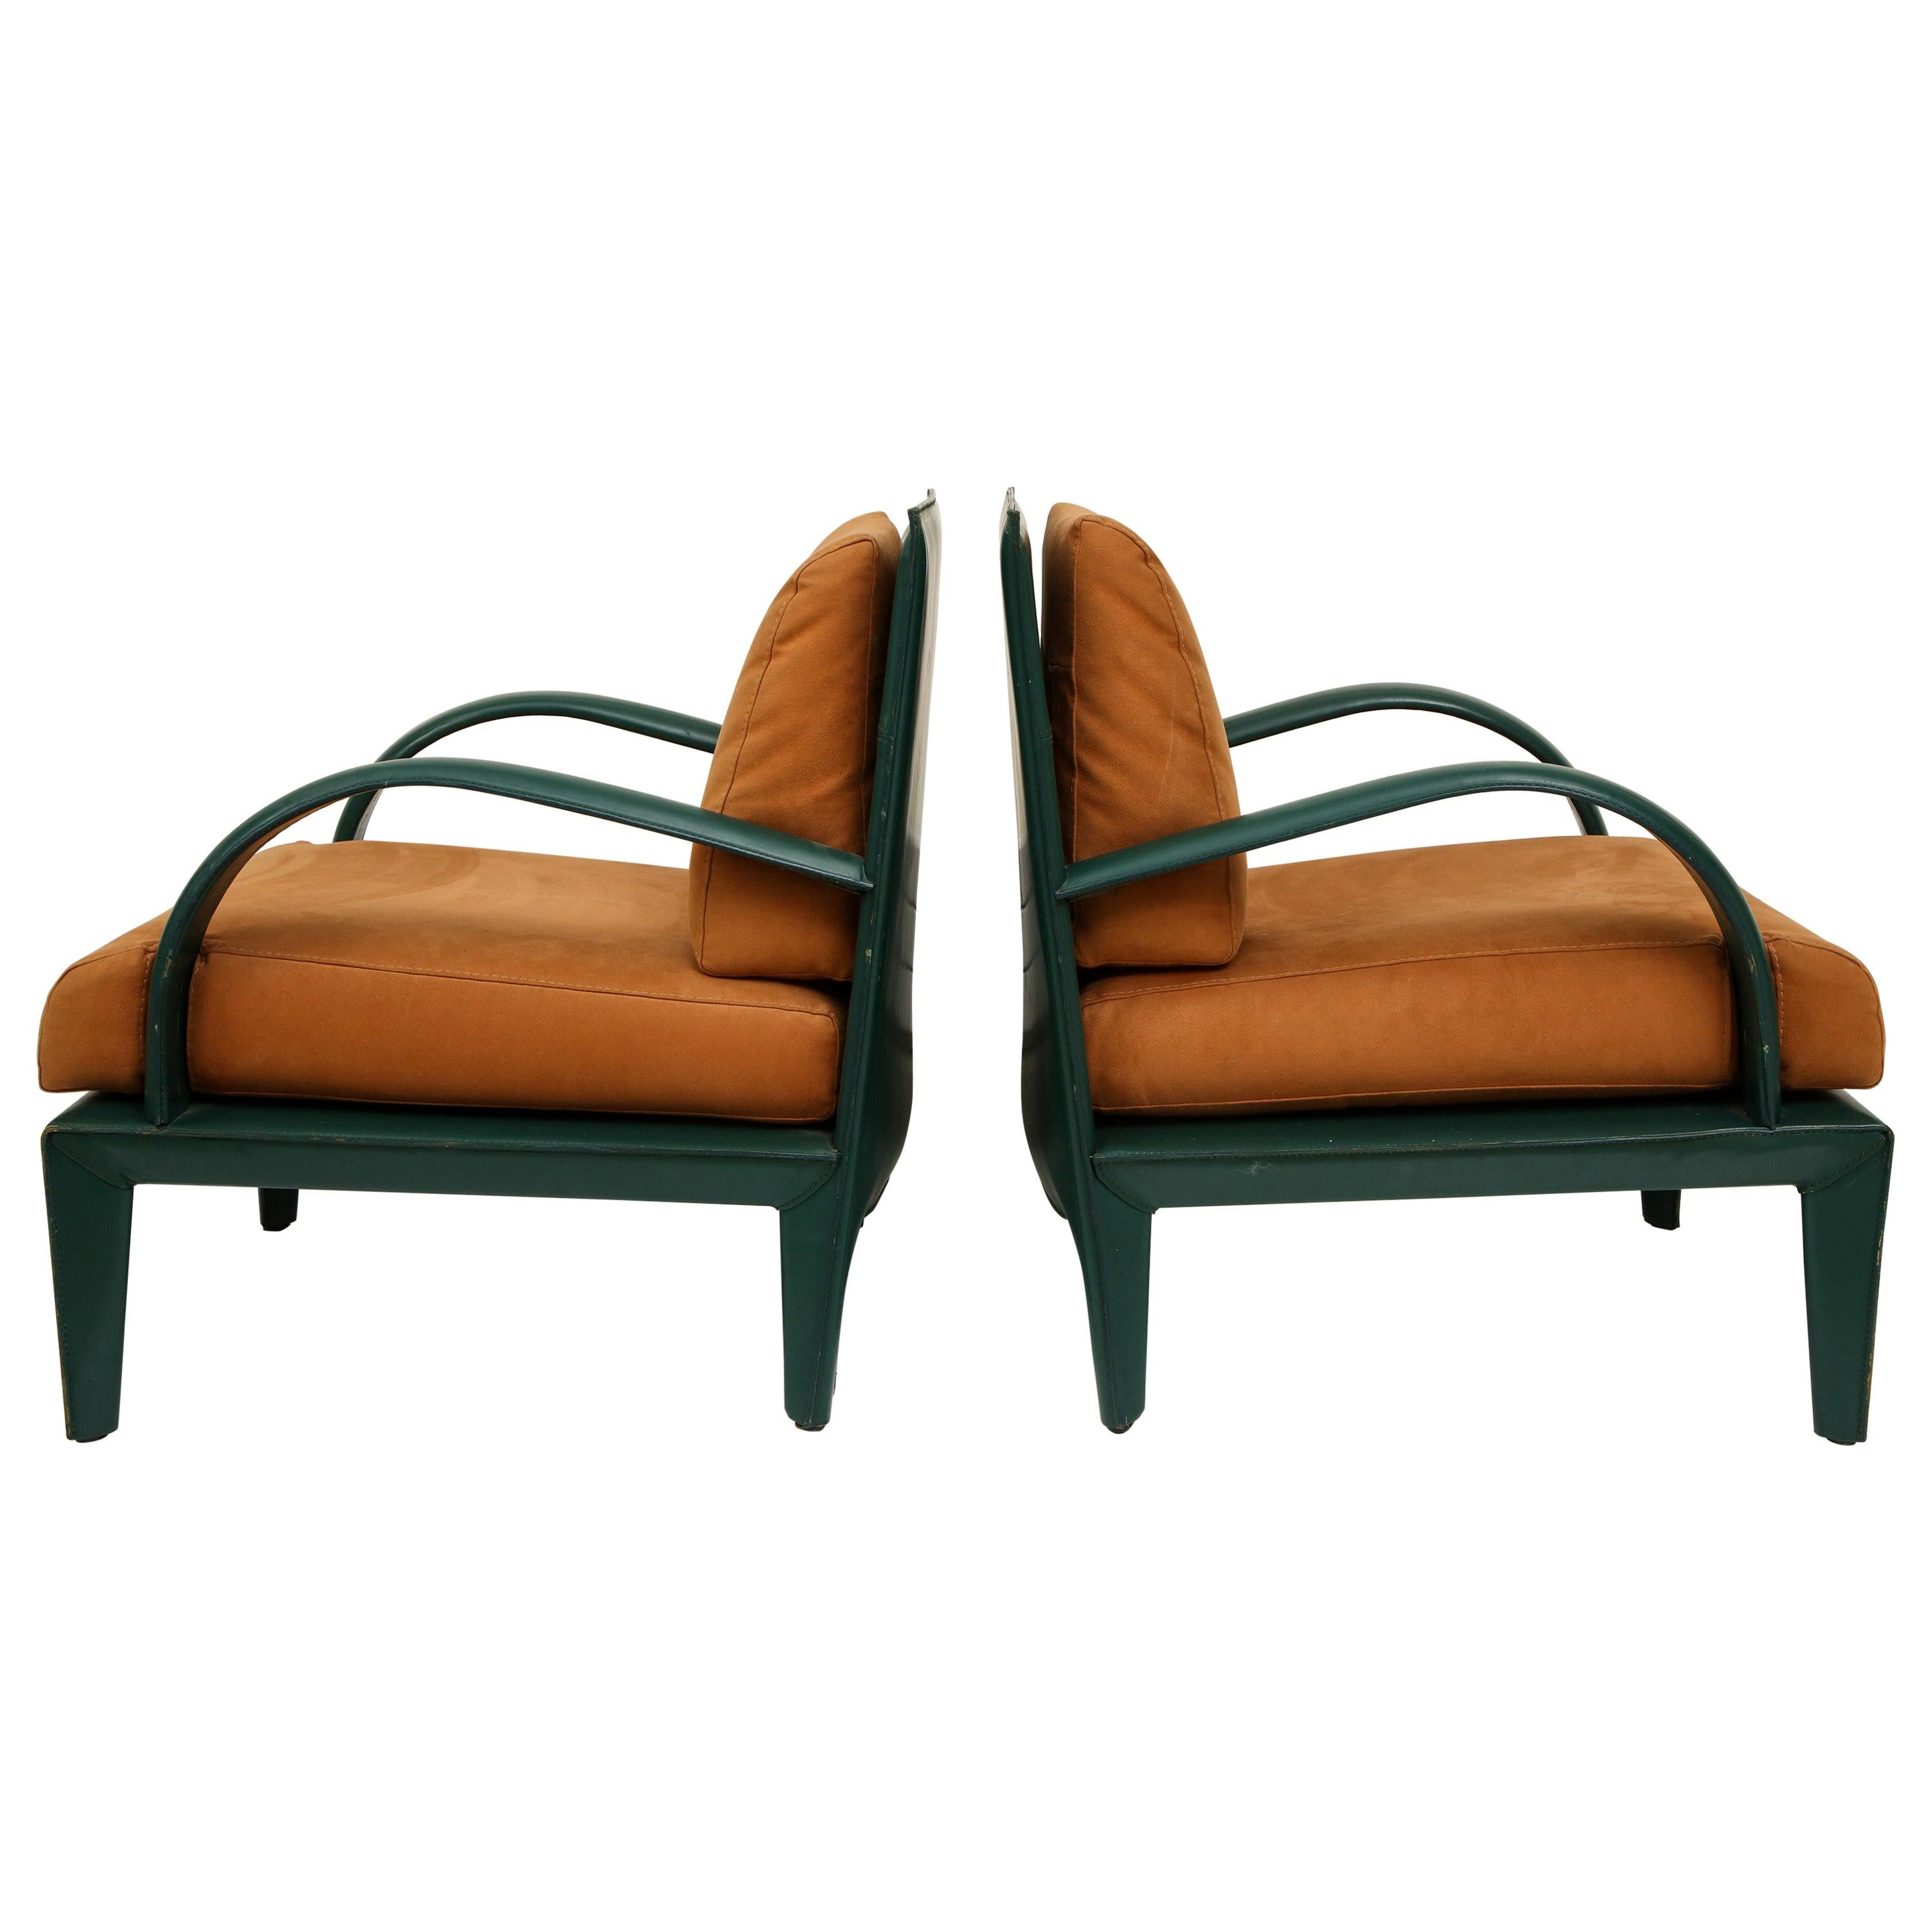 Roche Bobois Vintage braun grün Leder Lounge Stühle, 1980er Jahre, Frankreich

Schöne und schwere 1980er Lounge-Sessel. Das grüne Leder ist in sehr gutem Zustand und durchweg robust. Das braune Ultra-Wildleder bildet einen perfekten Kontrast. Sehr